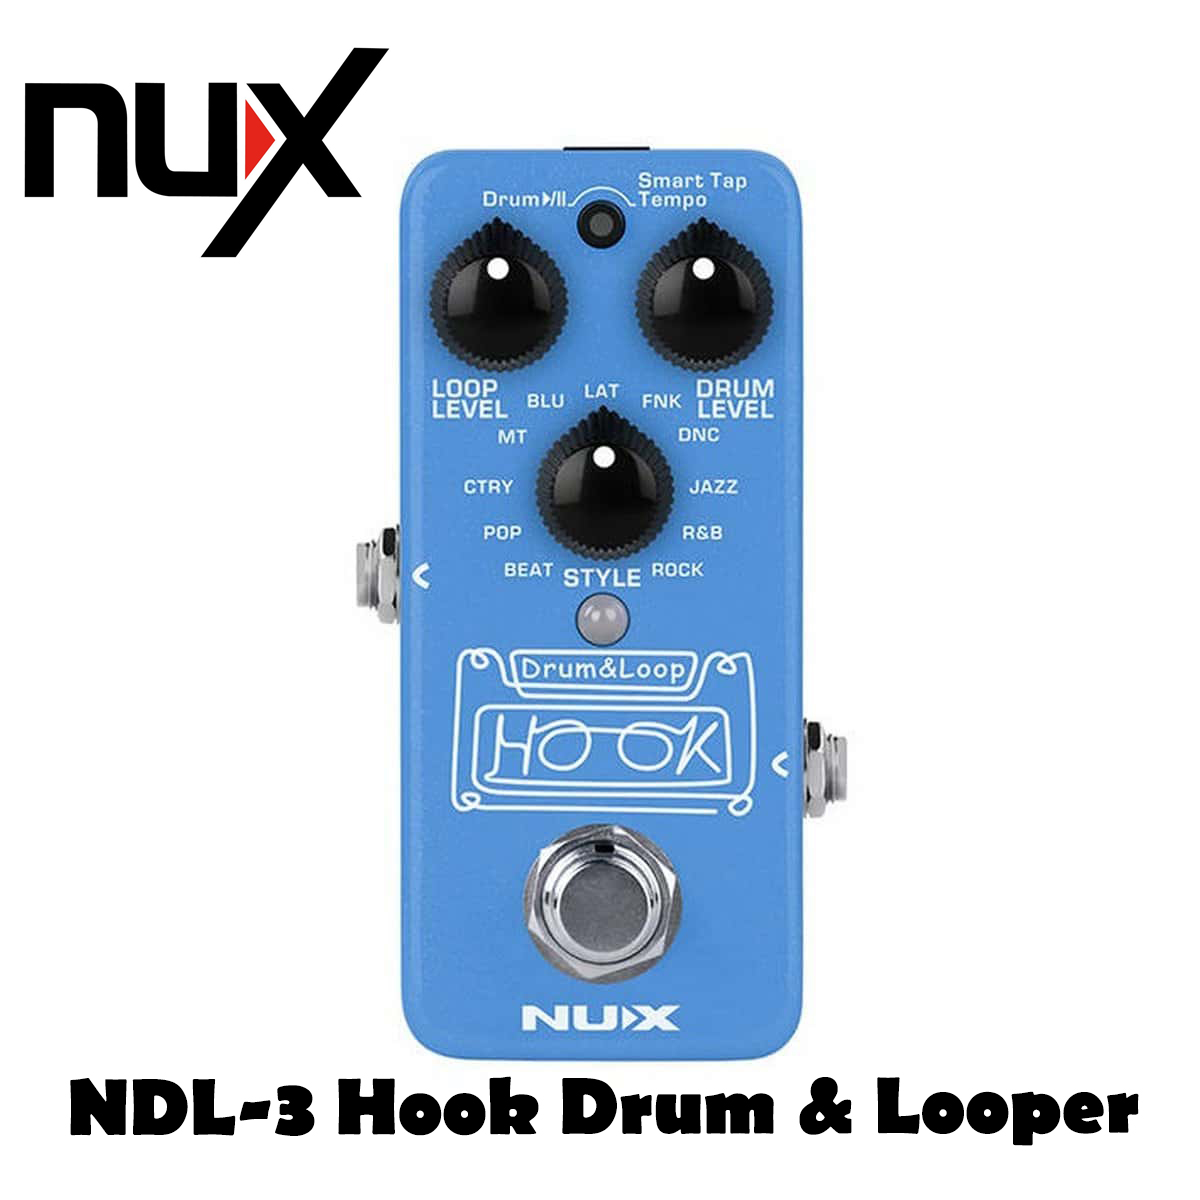 NuX NDL-3 HOOK Drum & Loop mini Looper Guitar Pedal with Phones out